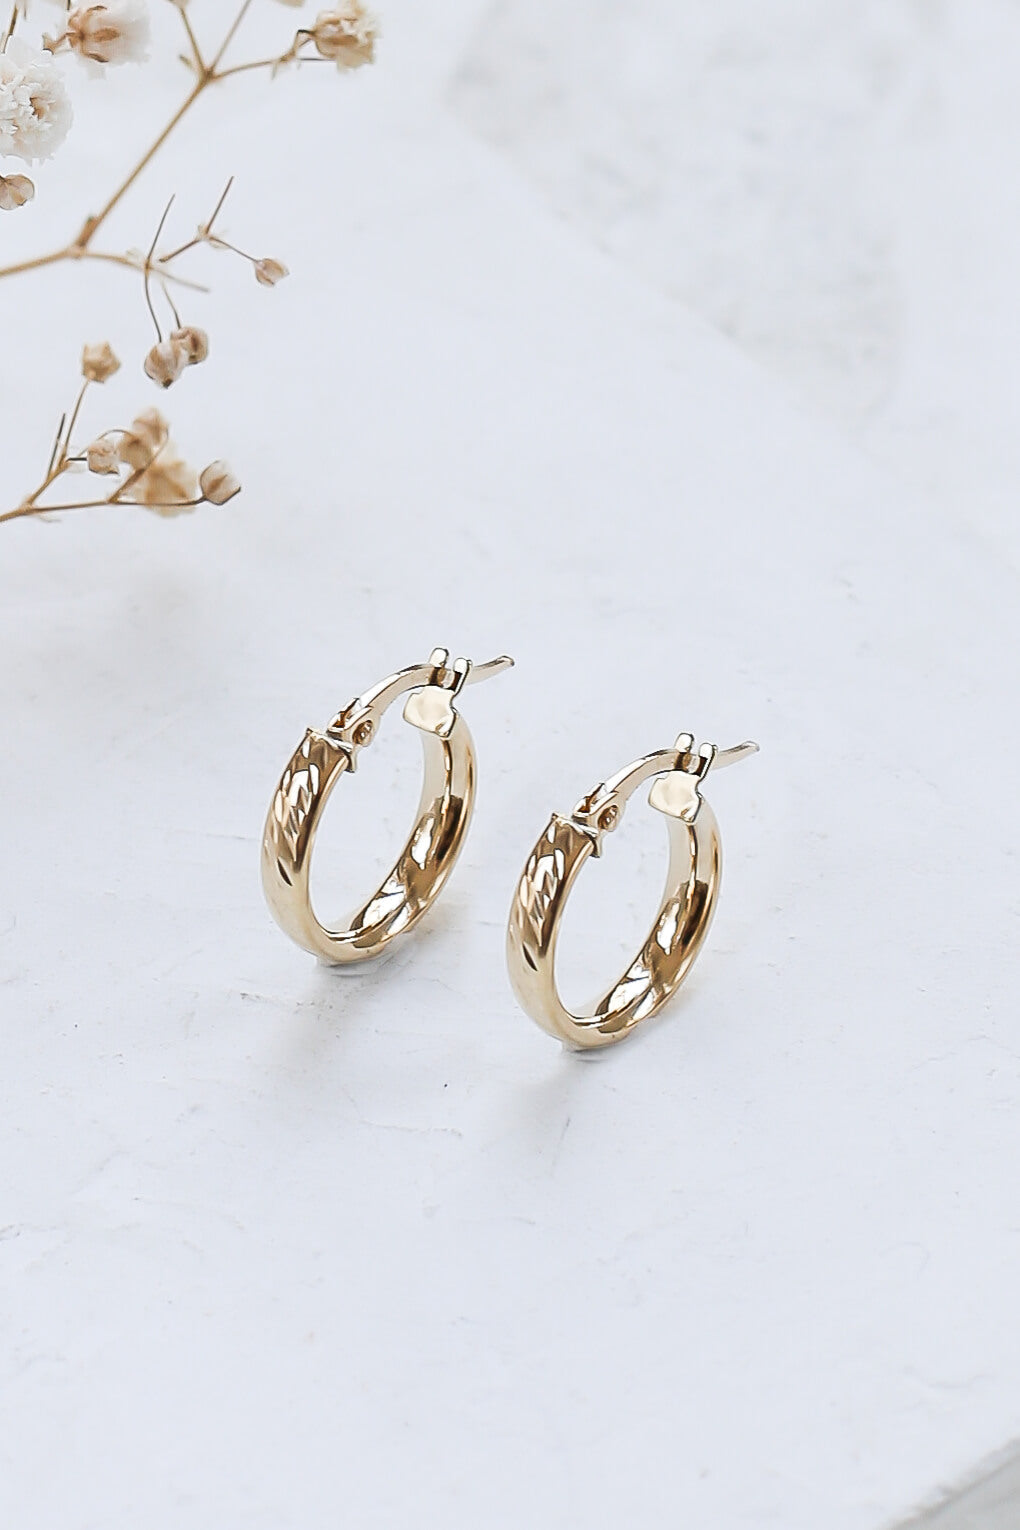 Cassie Earrings in 14K gold